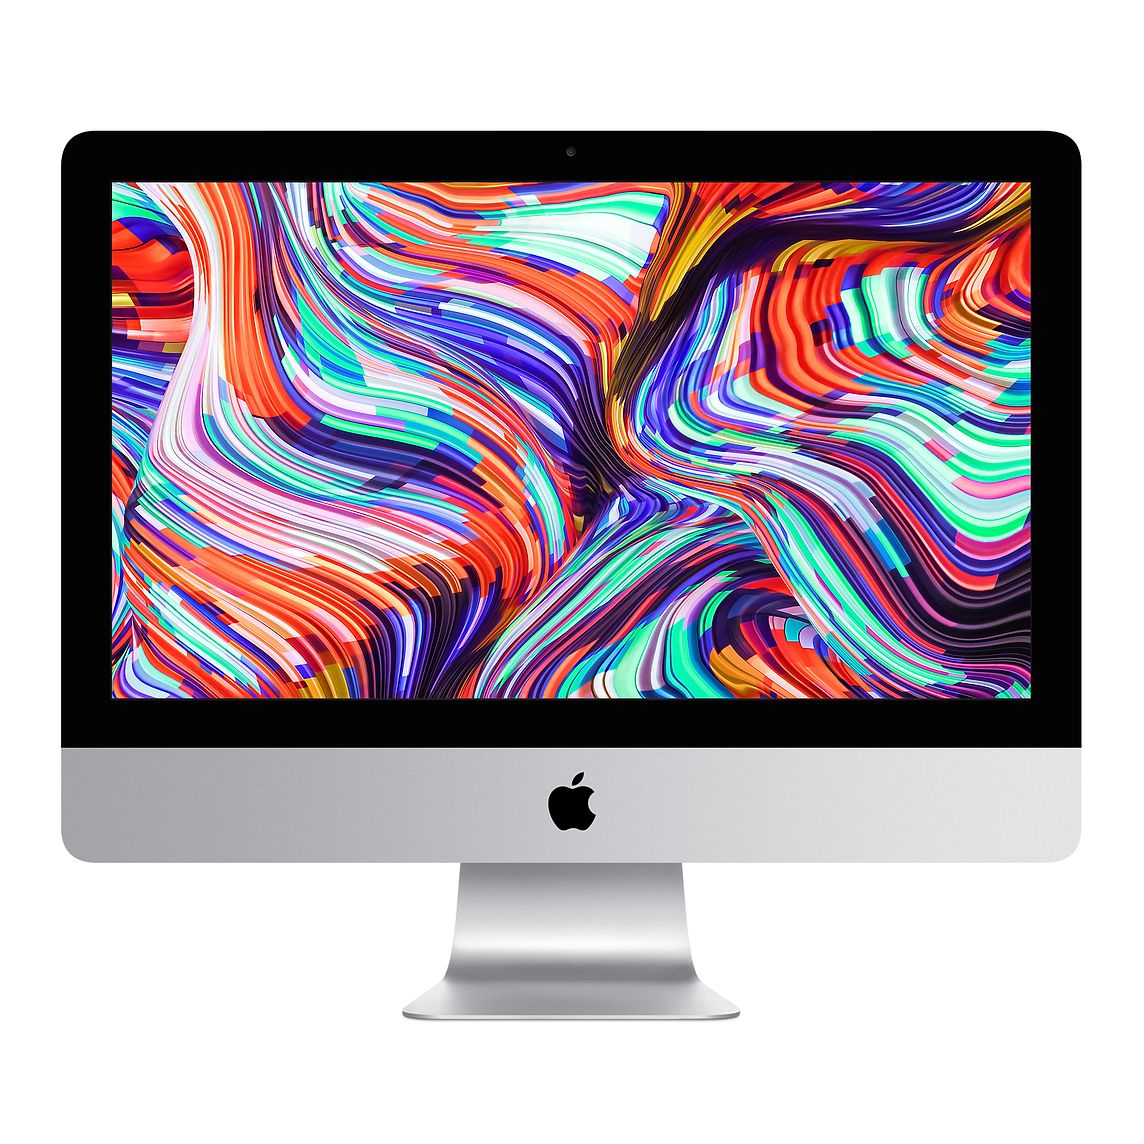 Apple iMac 21.5-Inch "Core i5" MMQA2LL/A A1418 Coretek Computers